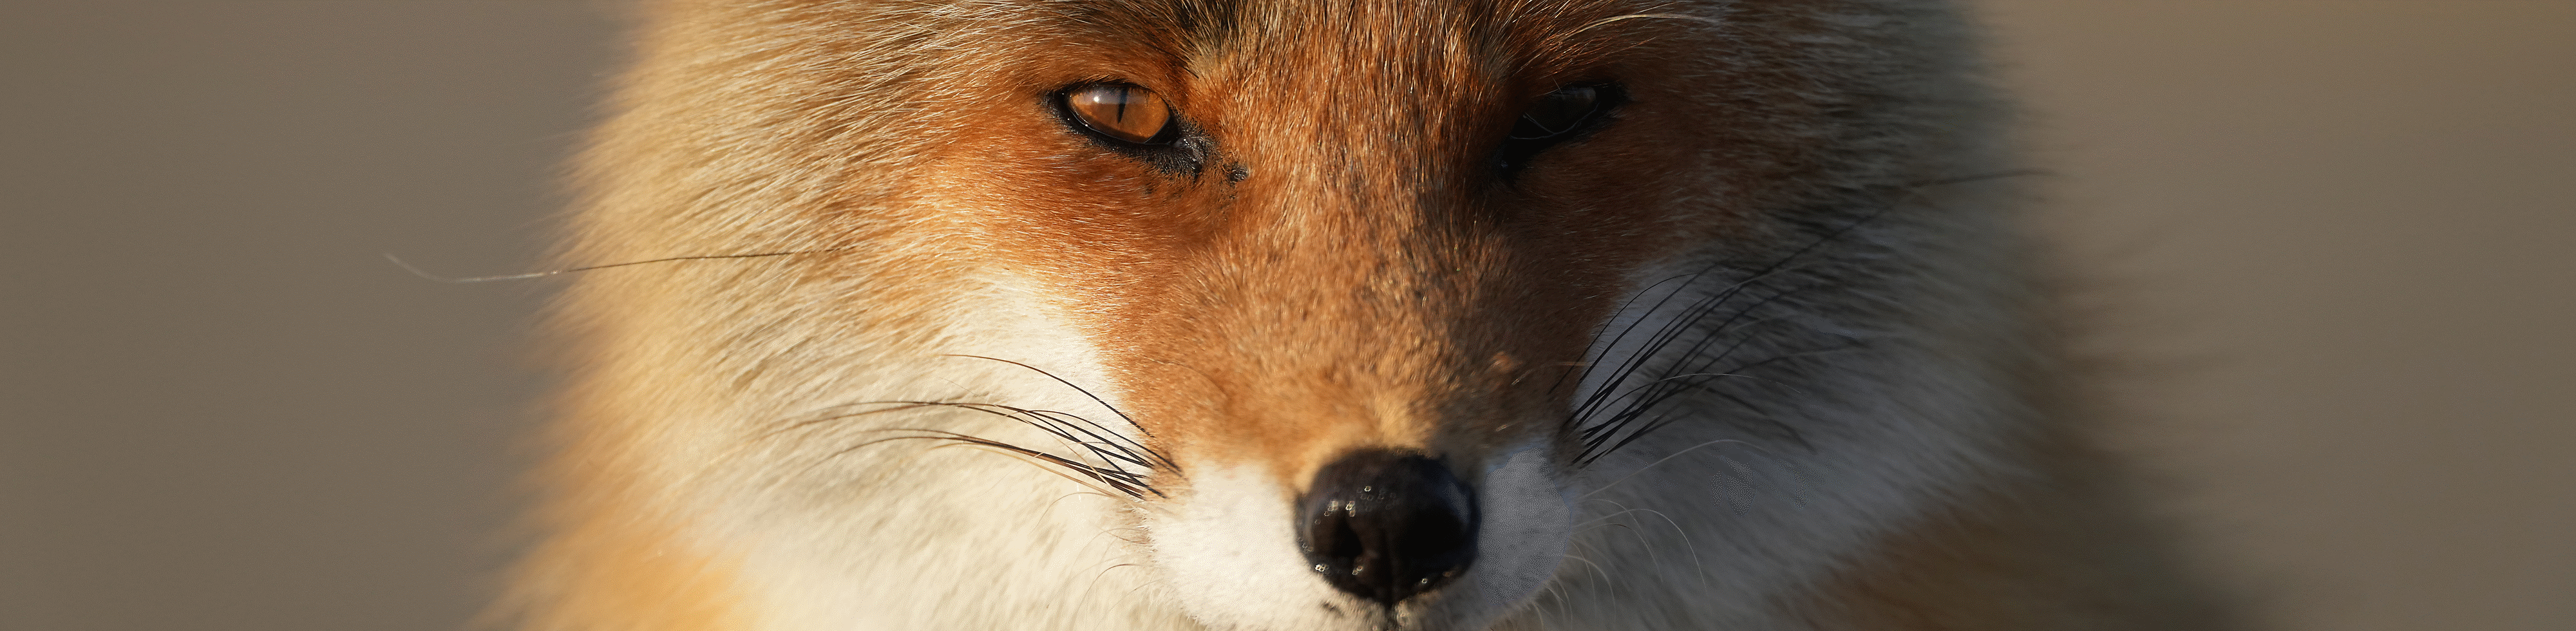 Lisica, ki gleda naprej